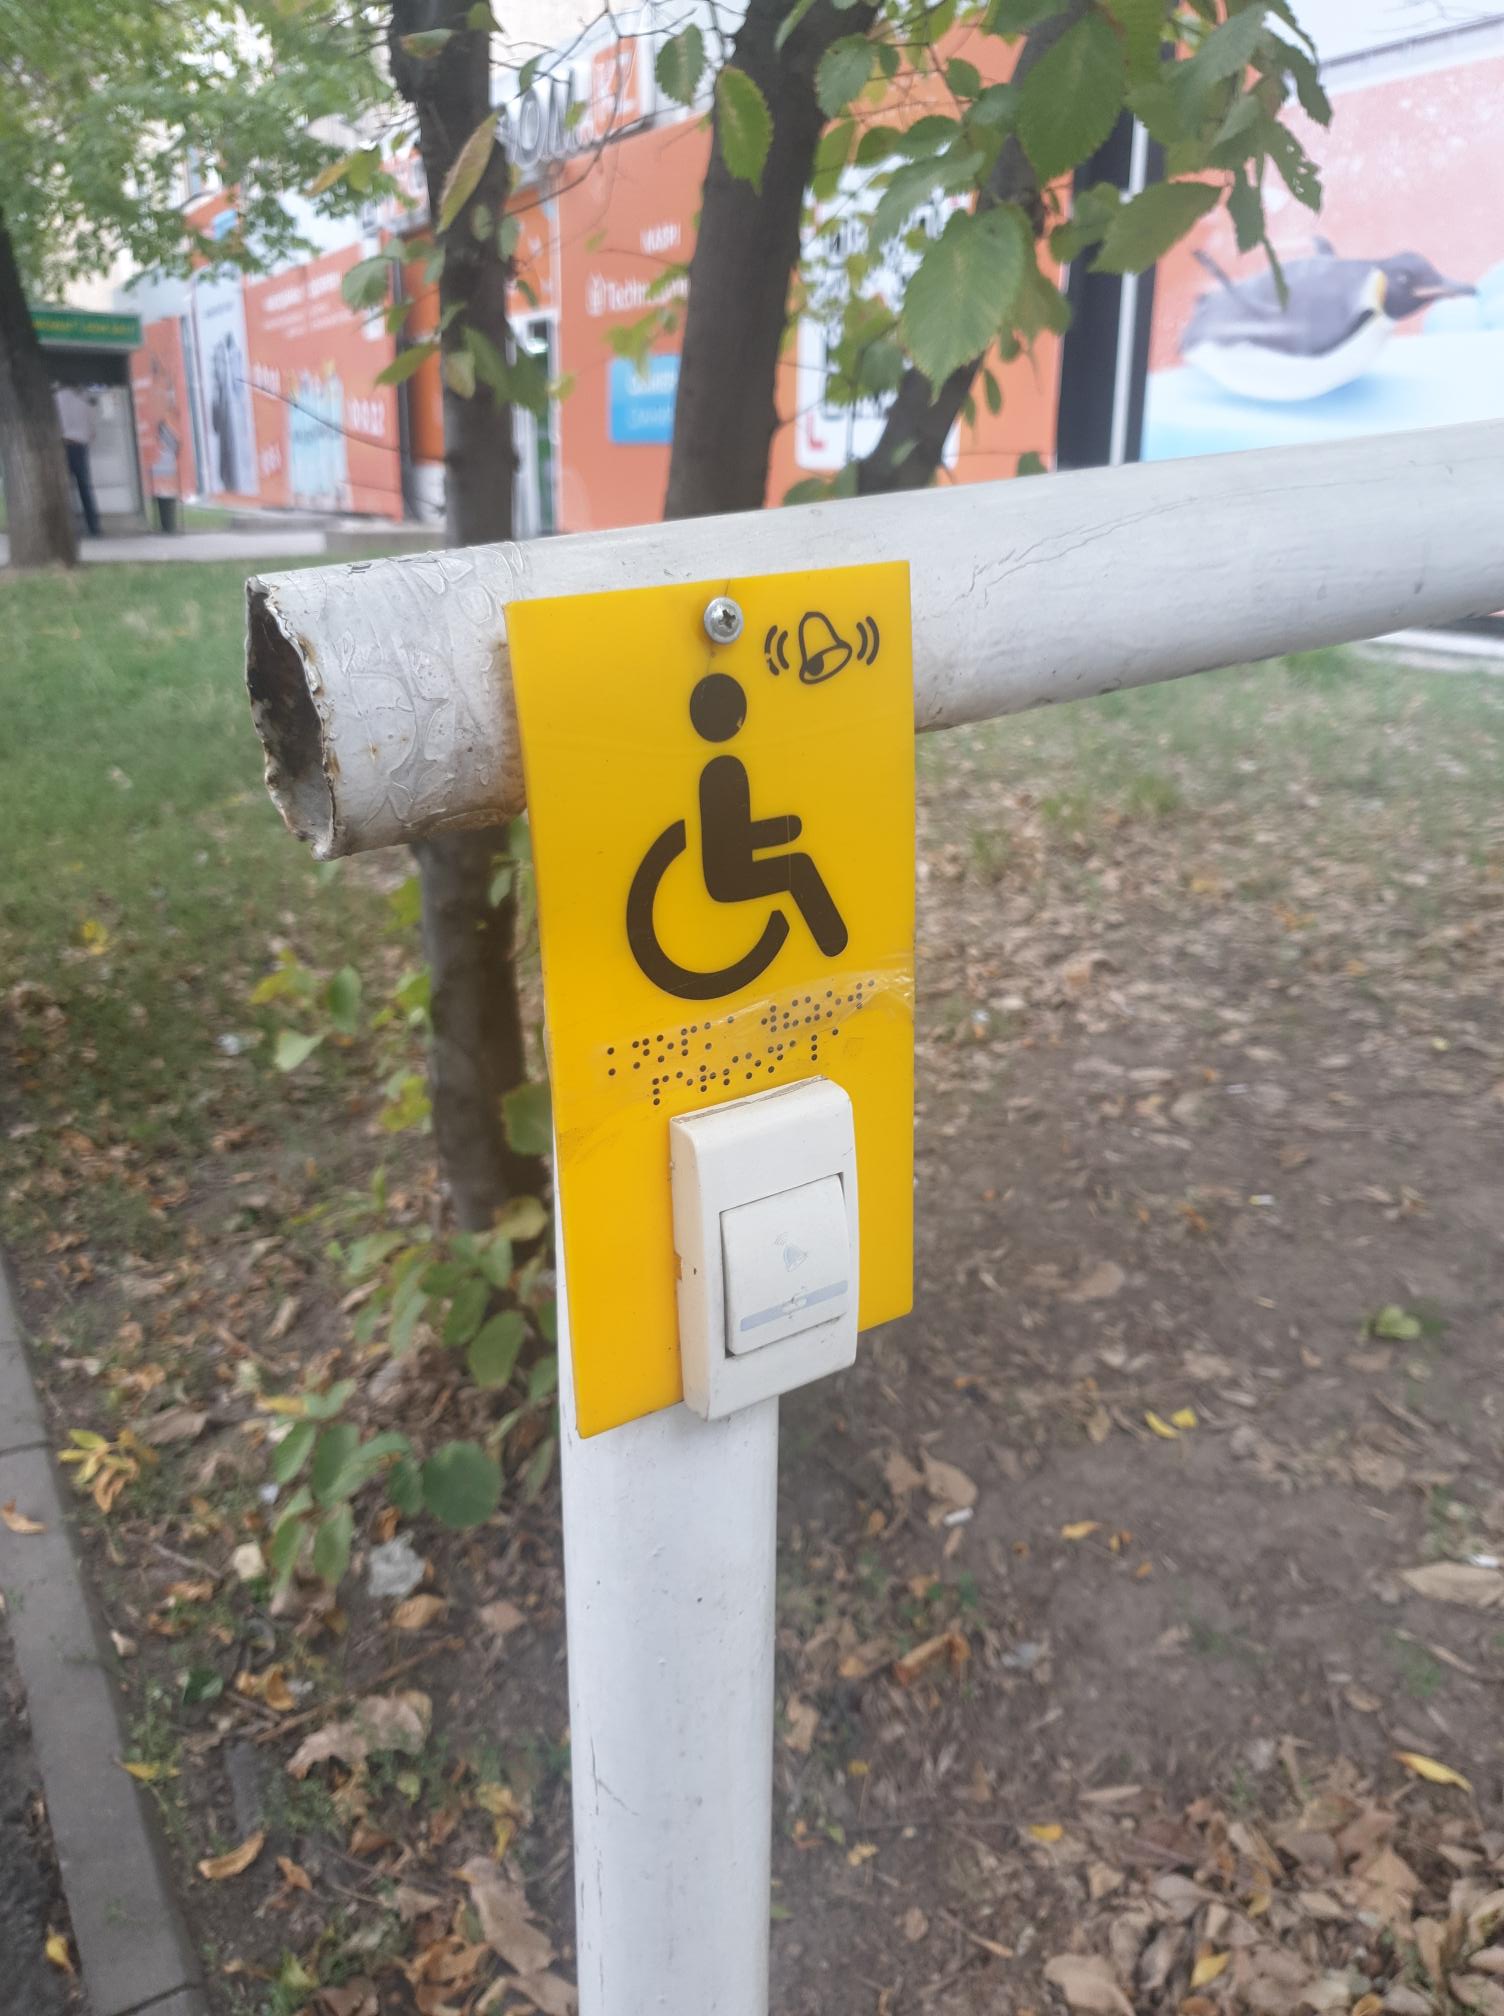 kuvassa keltainen kyltti, jossa on pyörätuolisymboli ja kutsunappi.